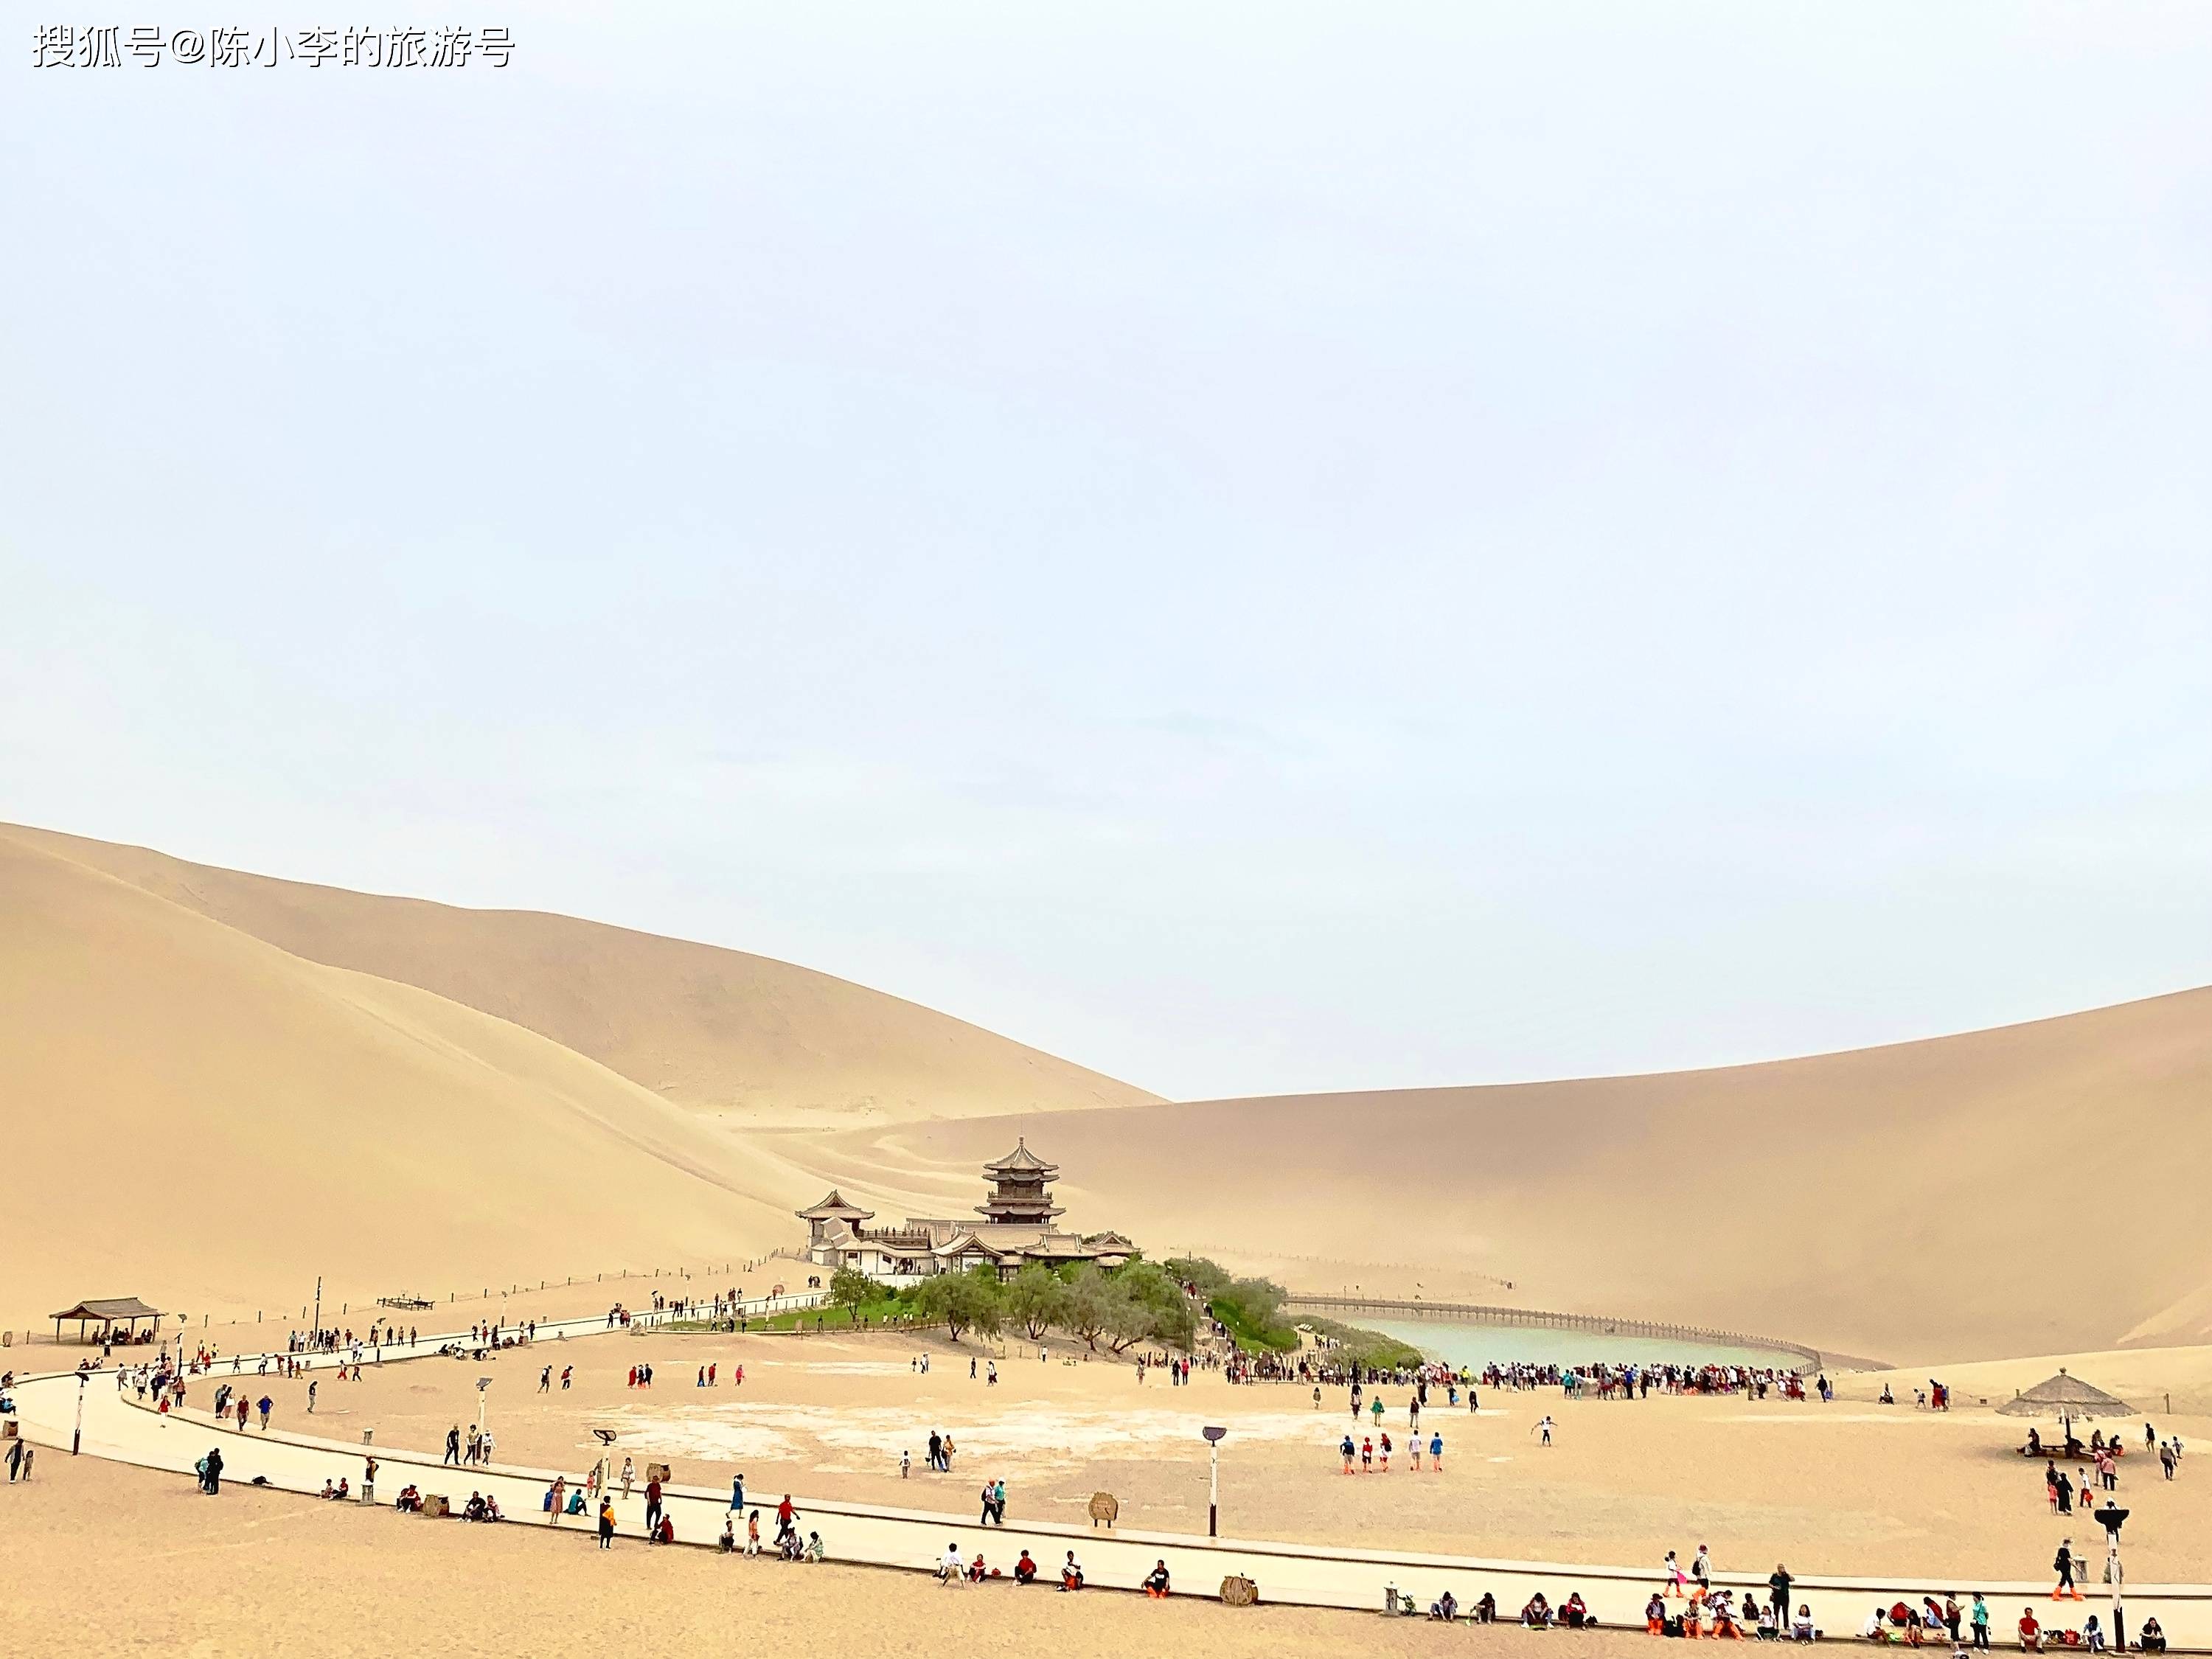 中国五大最美沙漠之一,甘肃鸣沙山月牙泉,塞外千年守望的仙境